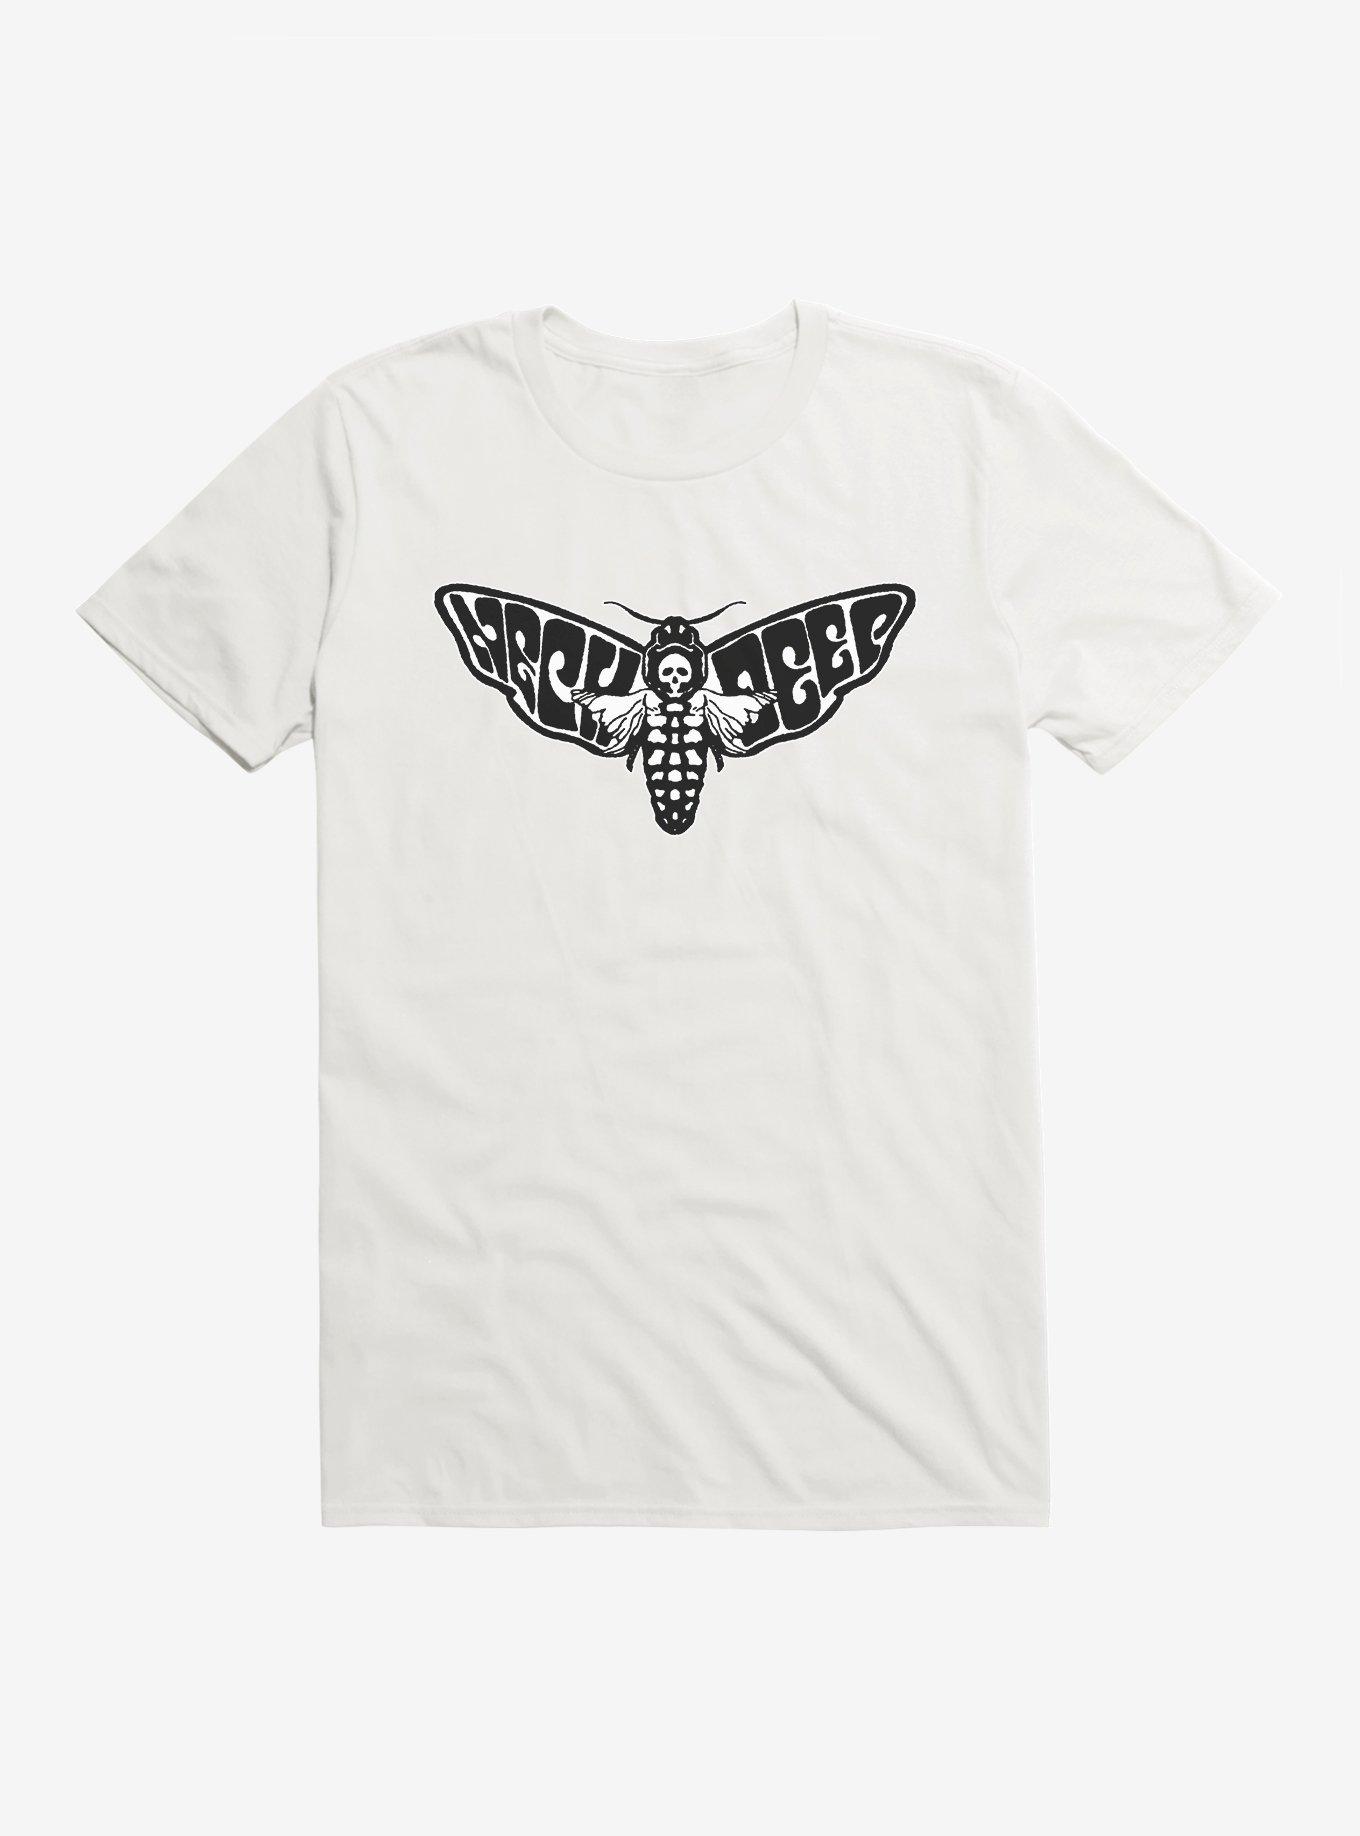 Neck Deep Death Moth T-Shirt